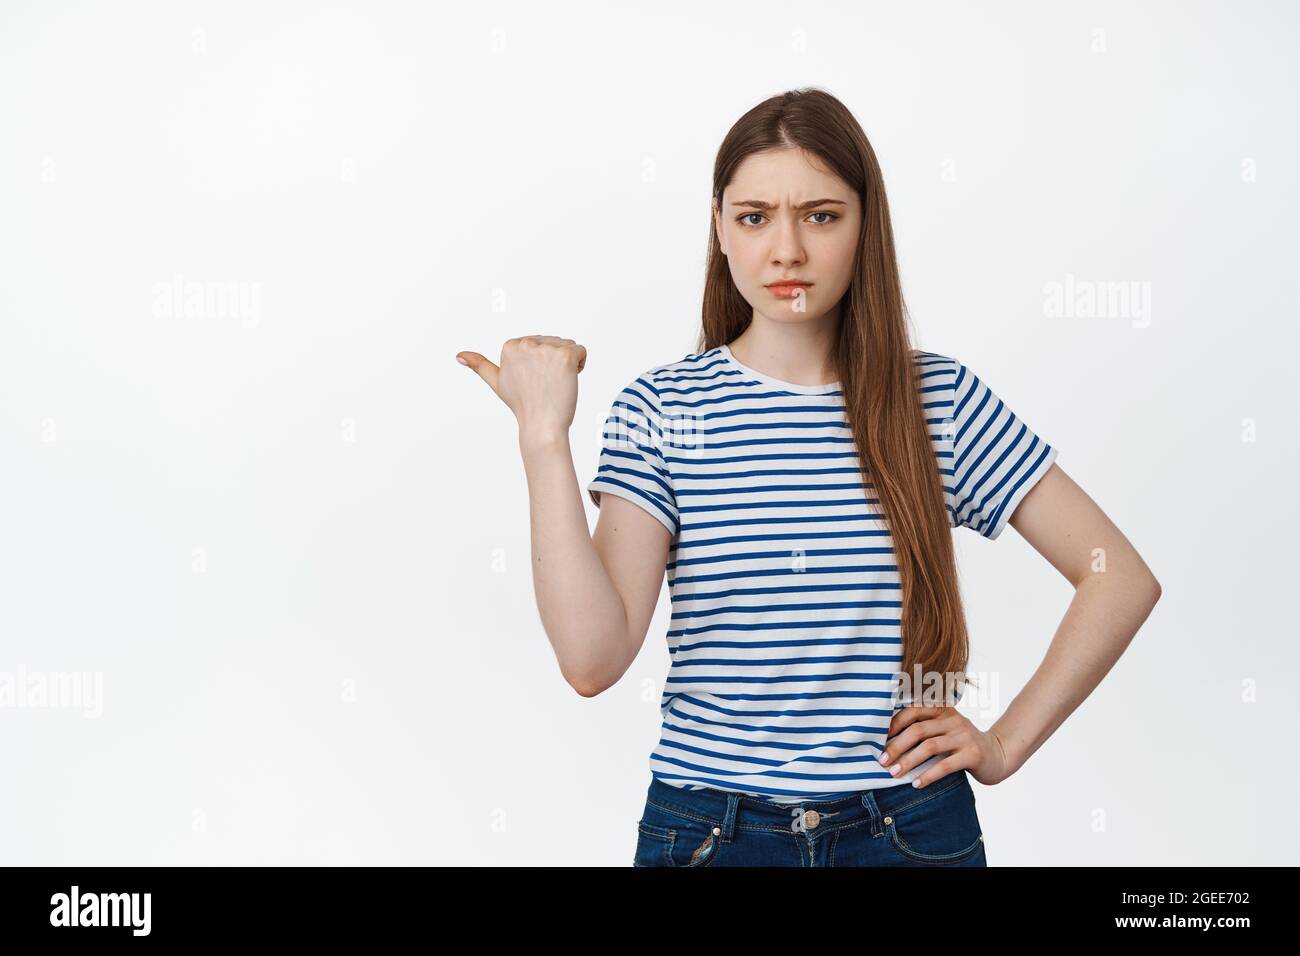 Ritratto di ragazza arrabbiata che punta a sinistra, offuscando deluso, lamentandosi di smth, in piedi su sfondo bianco Foto Stock